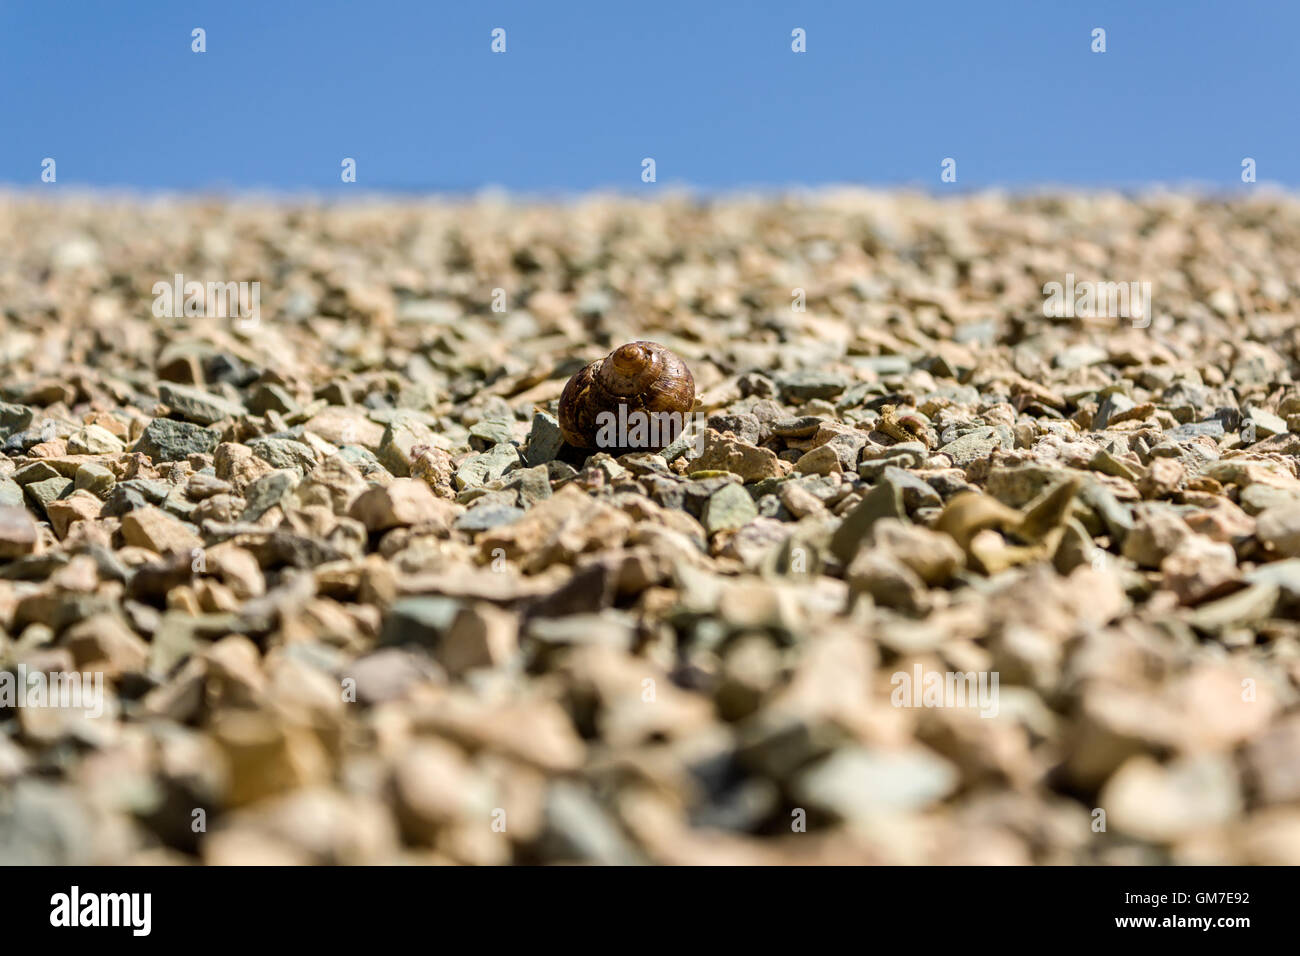 Snail on stones Stock Photo